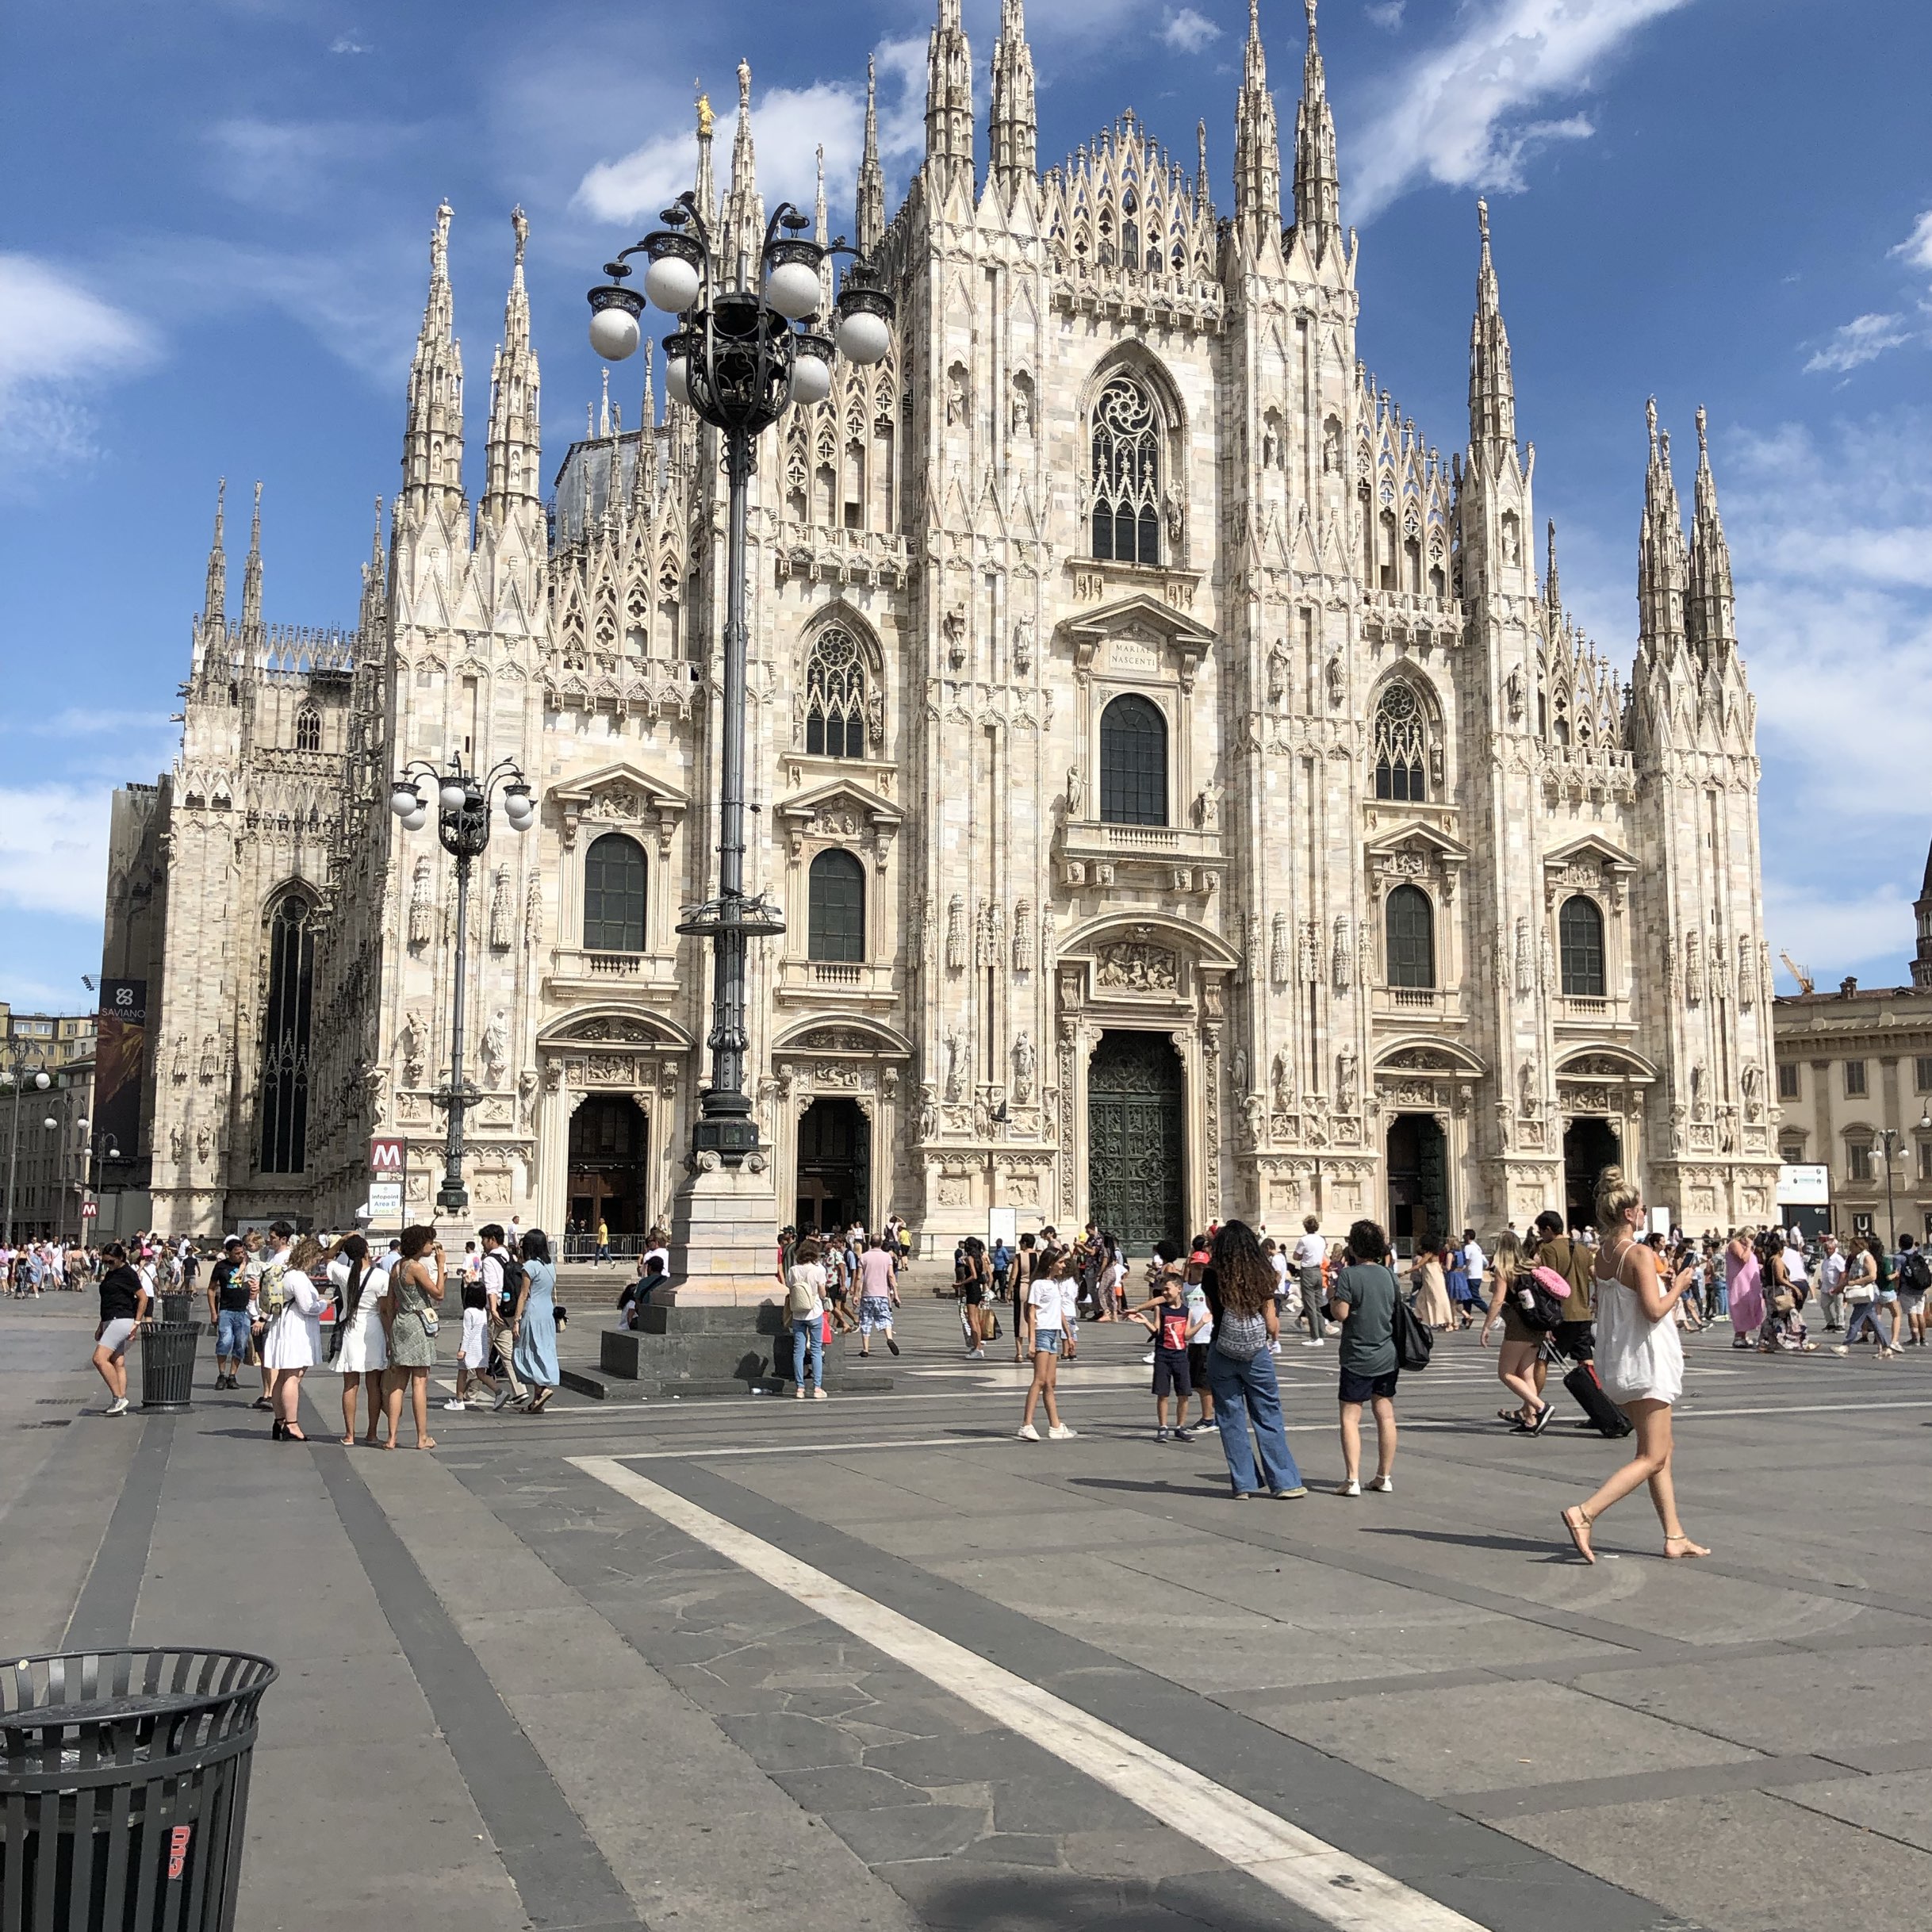 米兰大教堂（Duomo di Milano），坐落于意大利米兰市中心的广场，是世界上最大的哥特式教堂